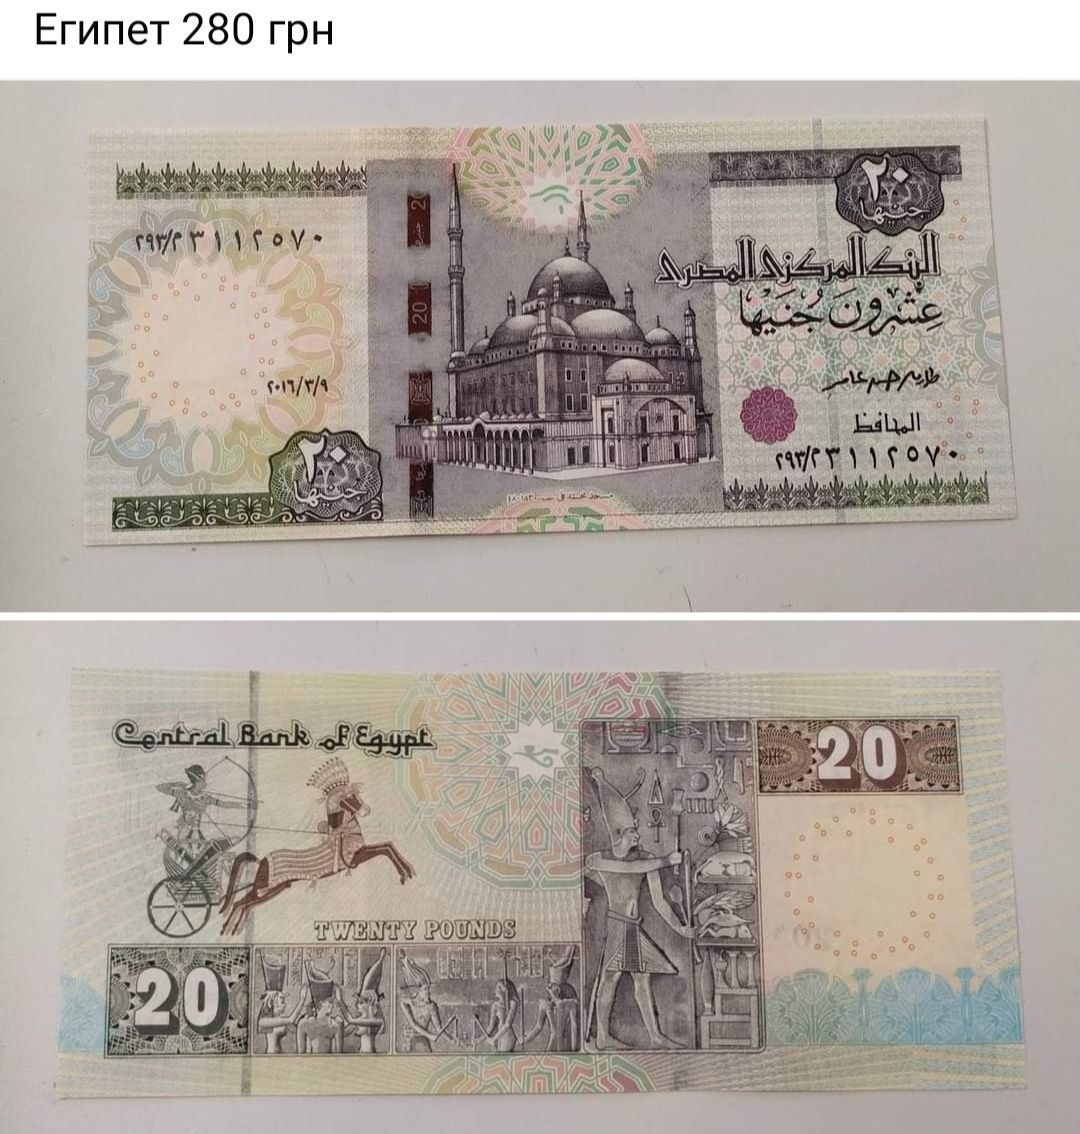 Коста-Рика Сан-Томе и Принсипи Египет боны купюры банкноты